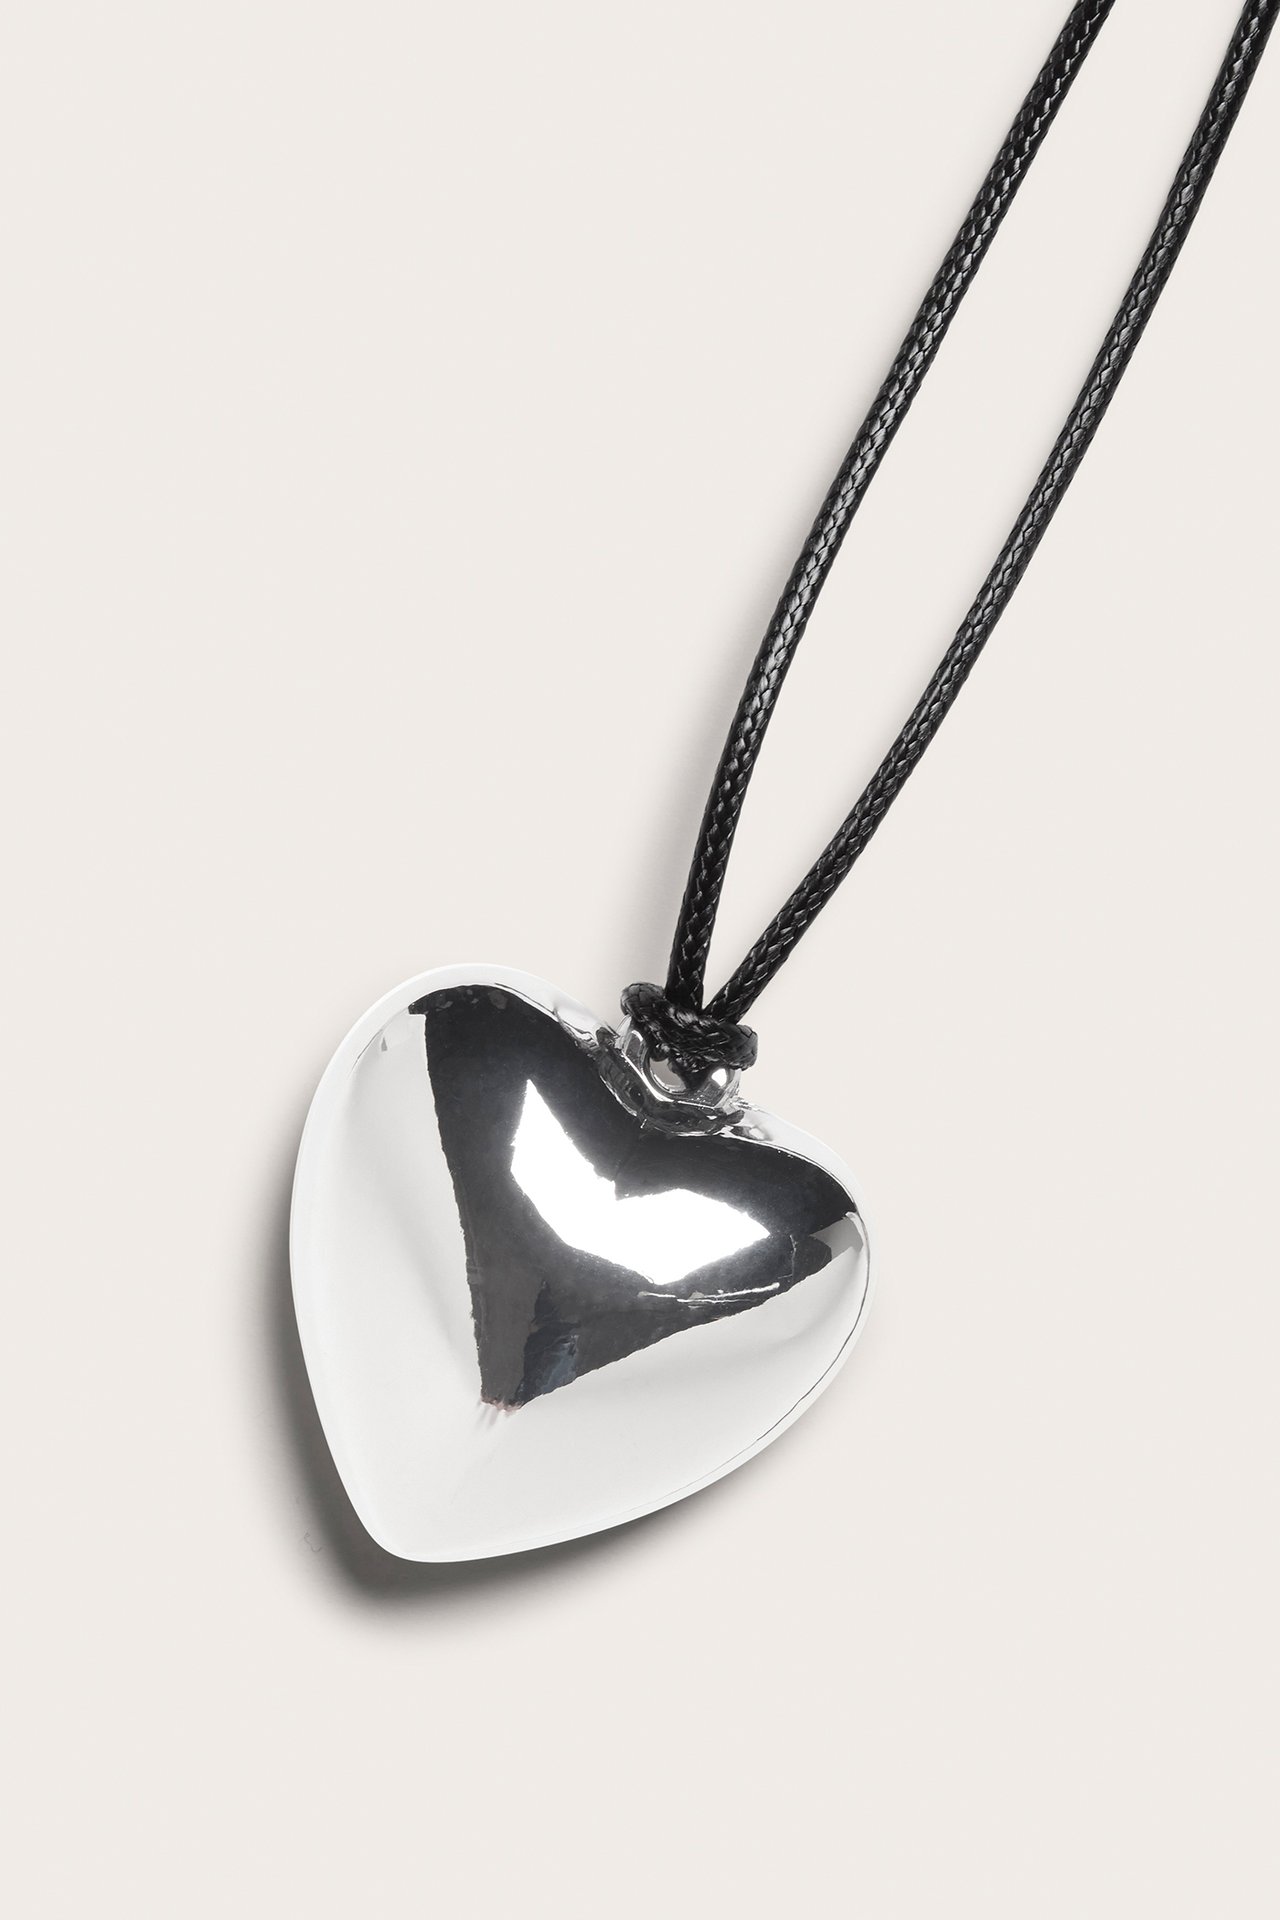 Smykke med hjerte - Sølv - 1